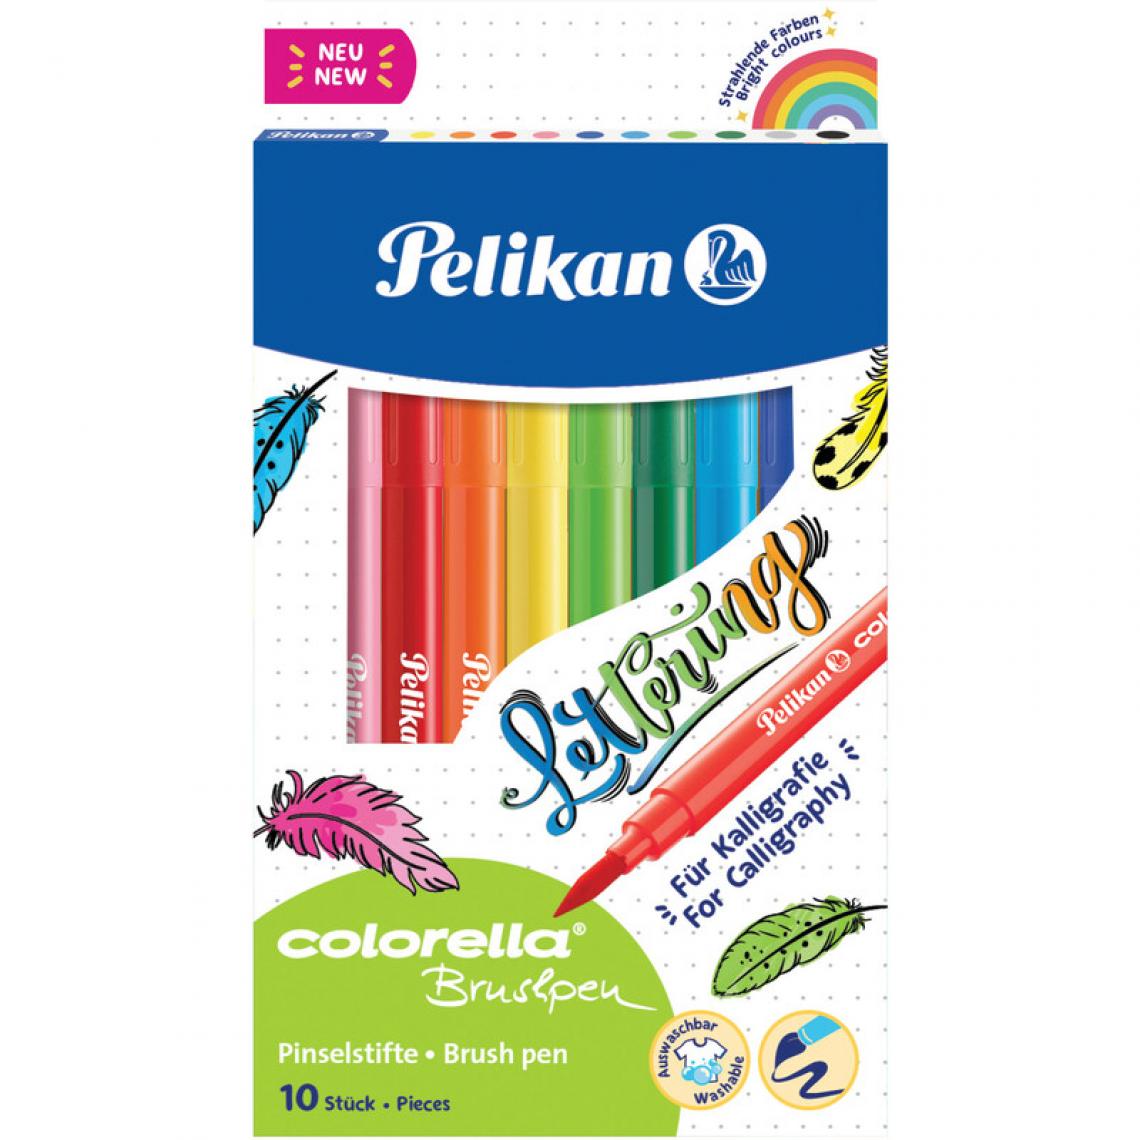 Pelikan - Pelikan Feutre colorella brushpen, étui en carton de 10 () - Outils et accessoires du peintre